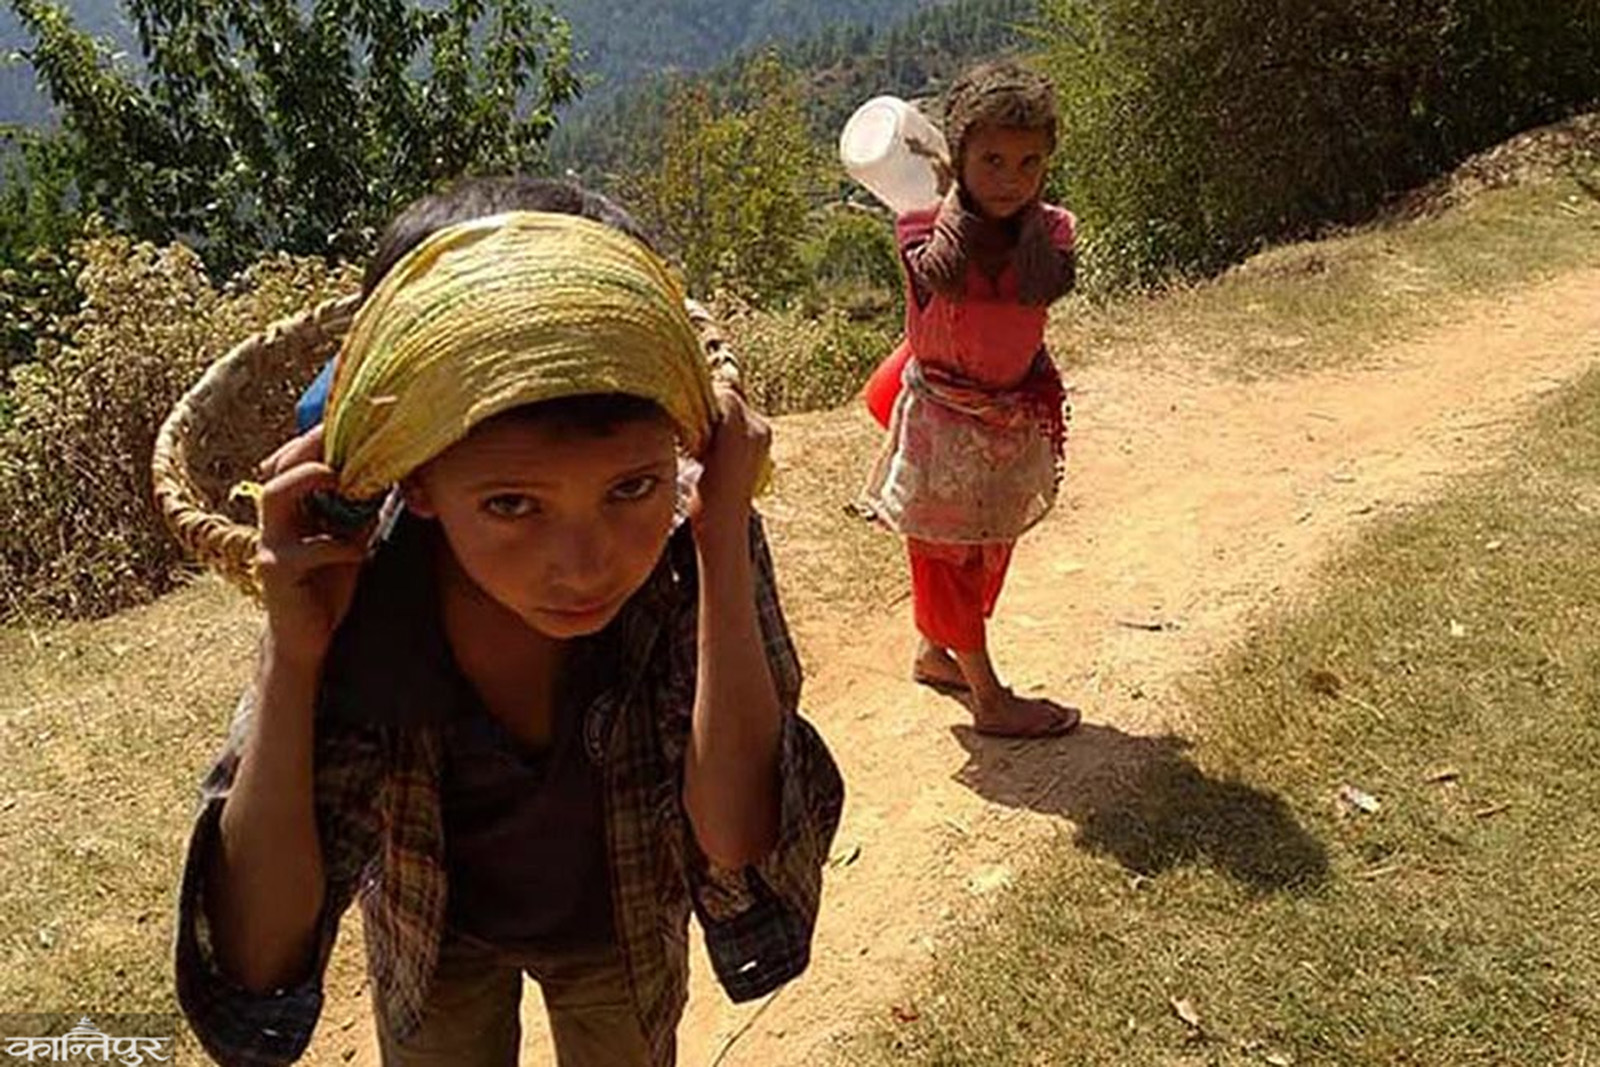 niños-porteando-nepal